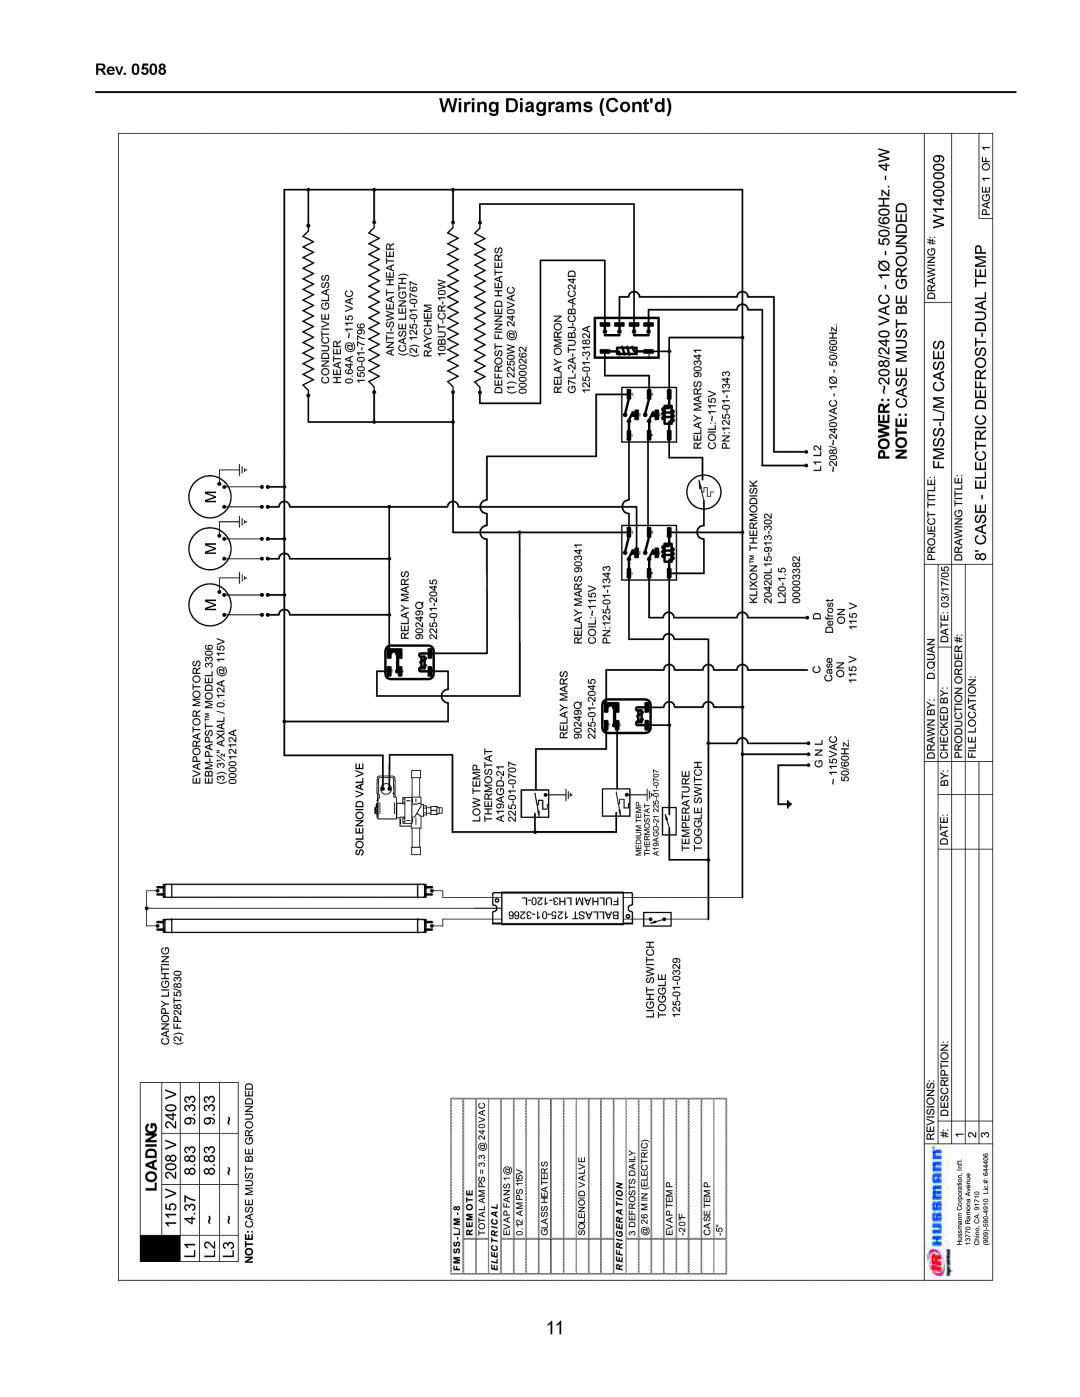 hussman FMSS-L operation manual Loading, Wiring Diagrams Contd, F M Ss- L/ M, R Em Ot E 